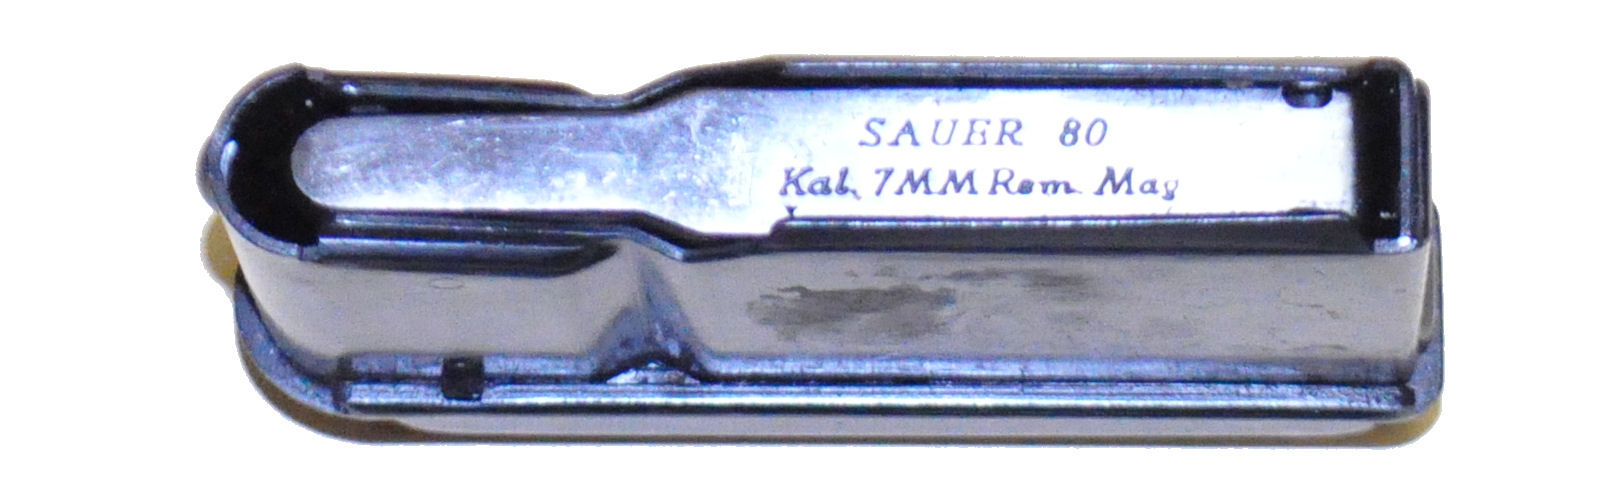 Sauer 80 .7mmRemMag 3 schot origineel magazijn